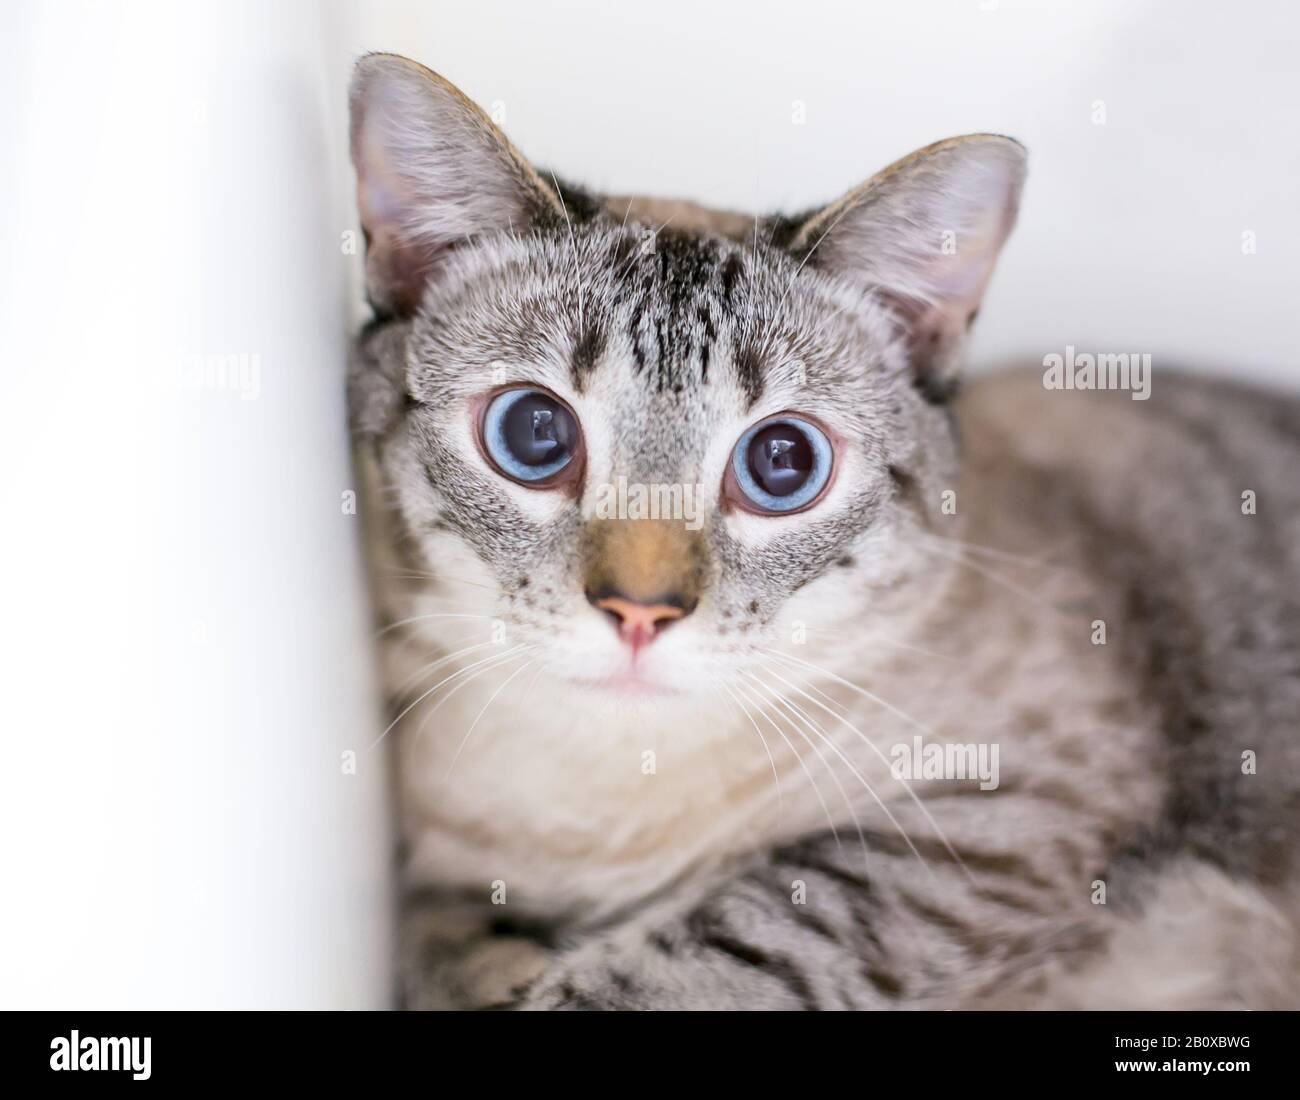 Un gato doméstico de ojos cruzados con una expresión nerviosa y pupilas dilatadas Foto de stock